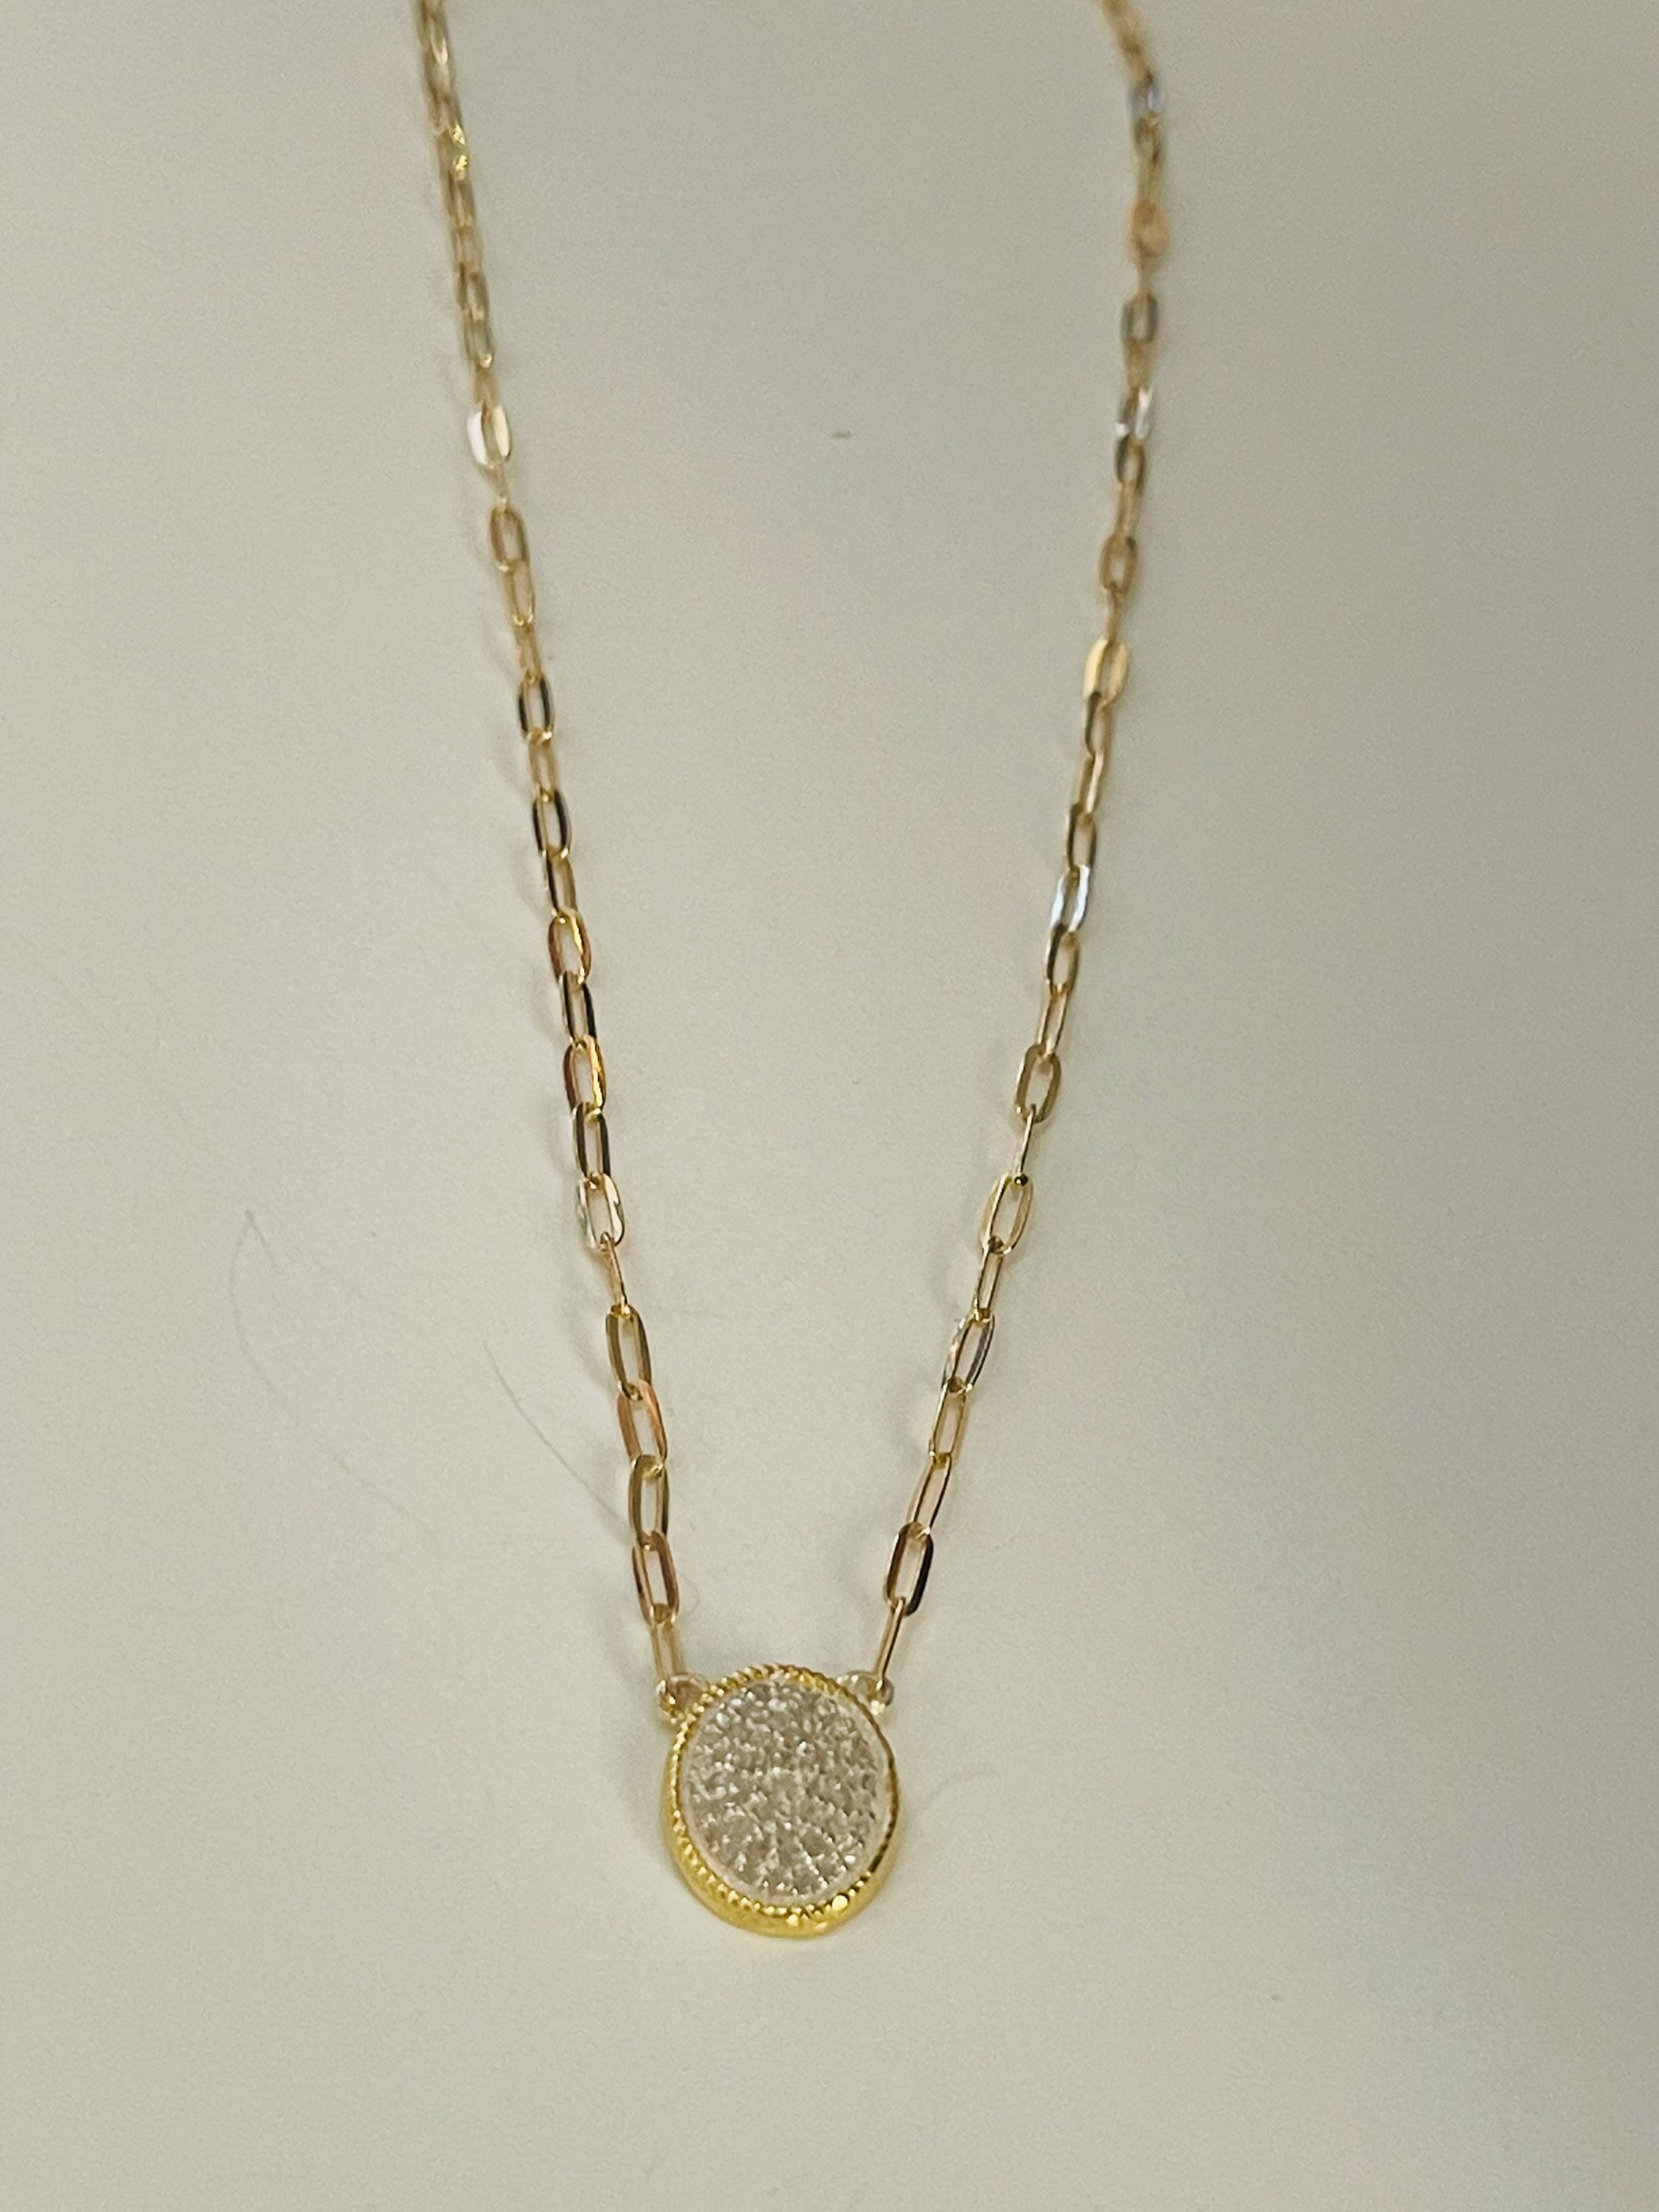 Oval Pave Diamond Necklace by Karen Birchmier